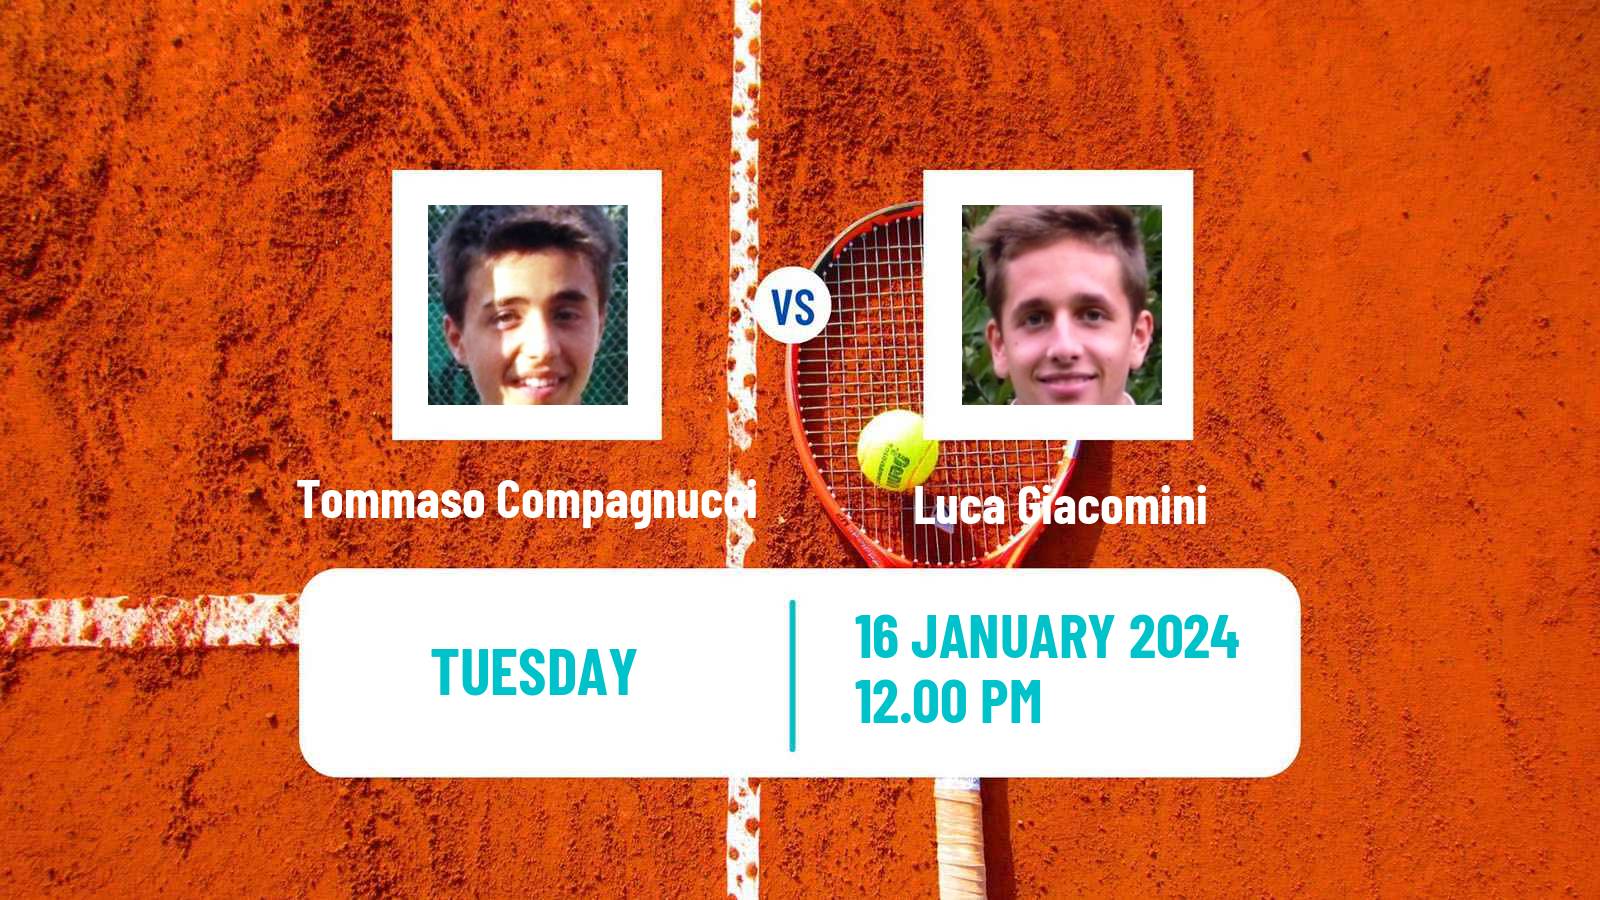 Tennis ITF M15 Manacor 2 Men 2024 Tommaso Compagnucci - Luca Giacomini